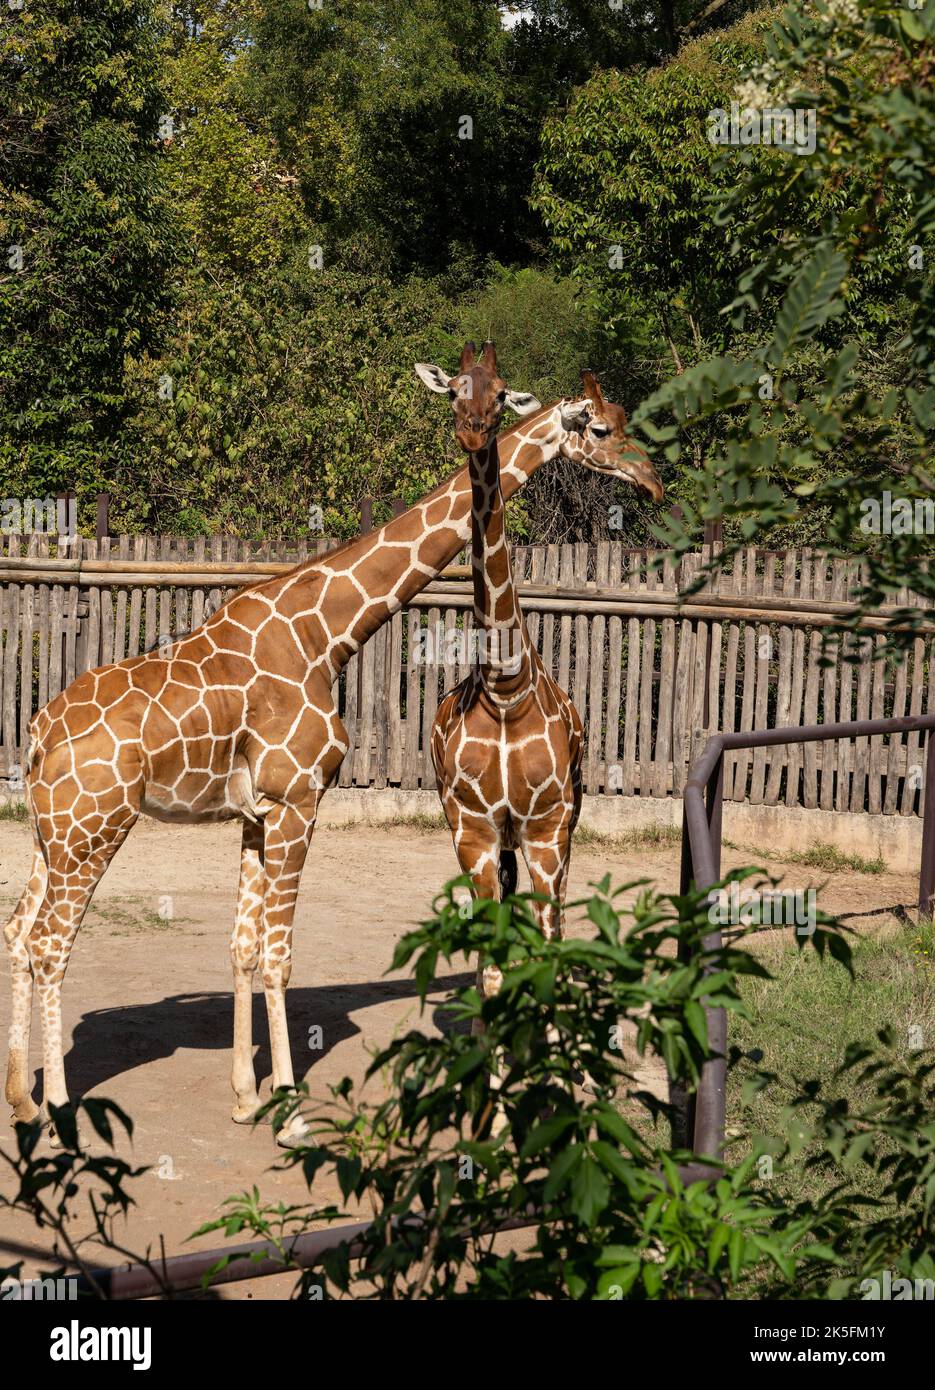 Reticulated giraffe (Giraffa reticulata or Giraffa camelopardalis reticulata), also known as the Somali giraffe, Bioparco di Roma, Rome zoo, Italy Stock Photo